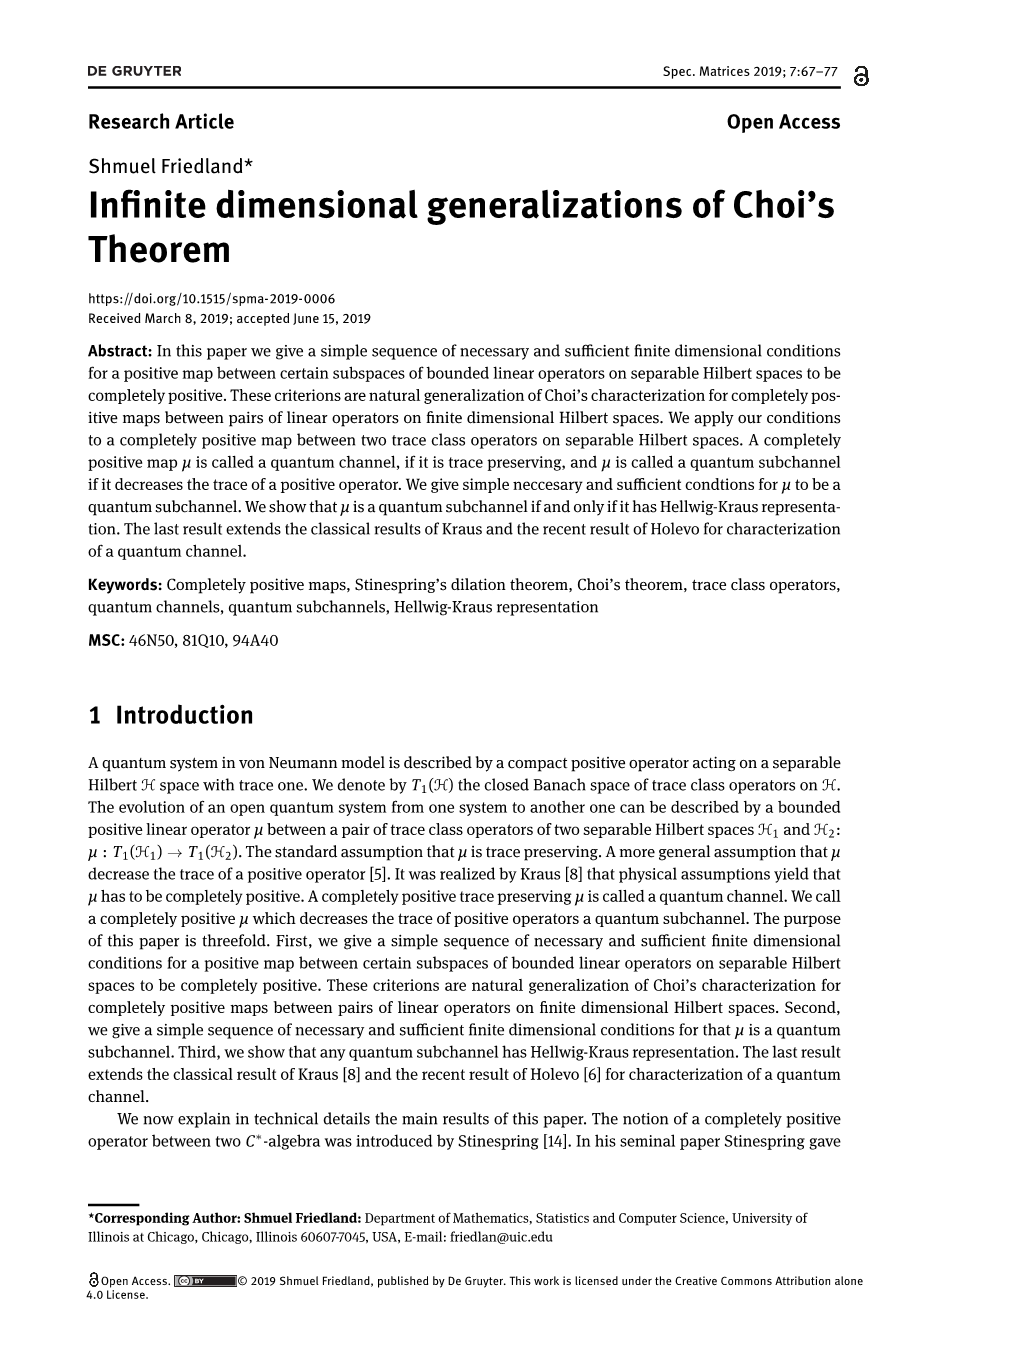 In Nite Dimensional Generalizations of Choi's Theorem